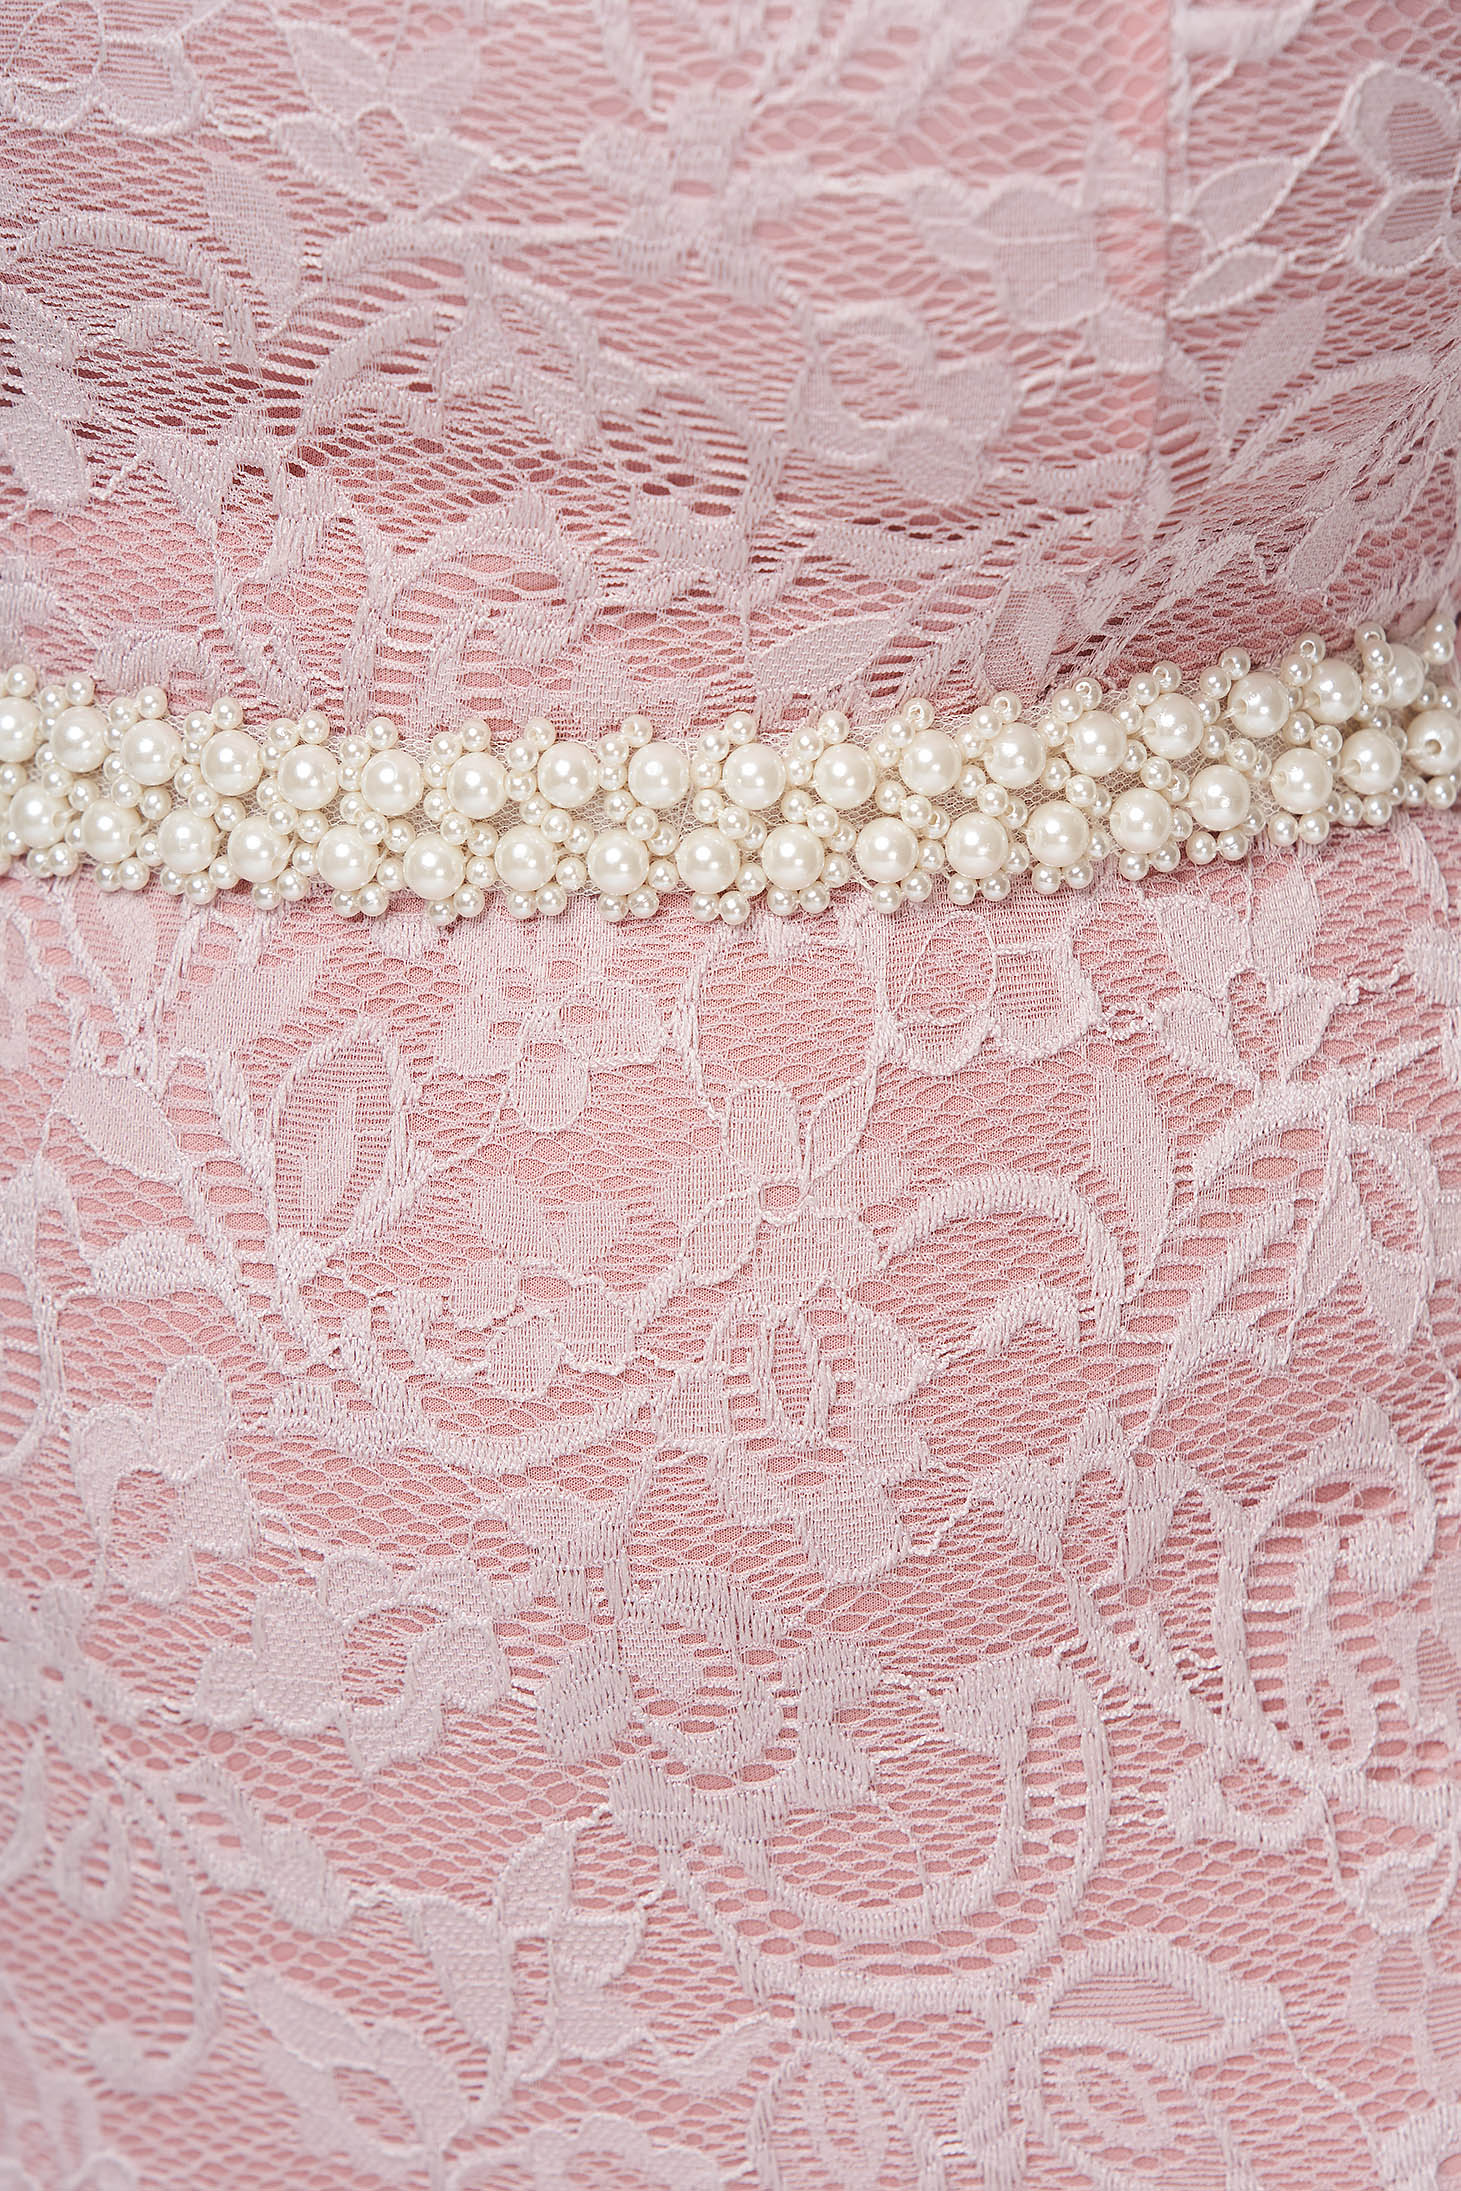 Csipkéből készült midi ruha - púder rózsaszín, szűkszabású, váll nélküli - StarShinerS 5 - StarShinerS.hu